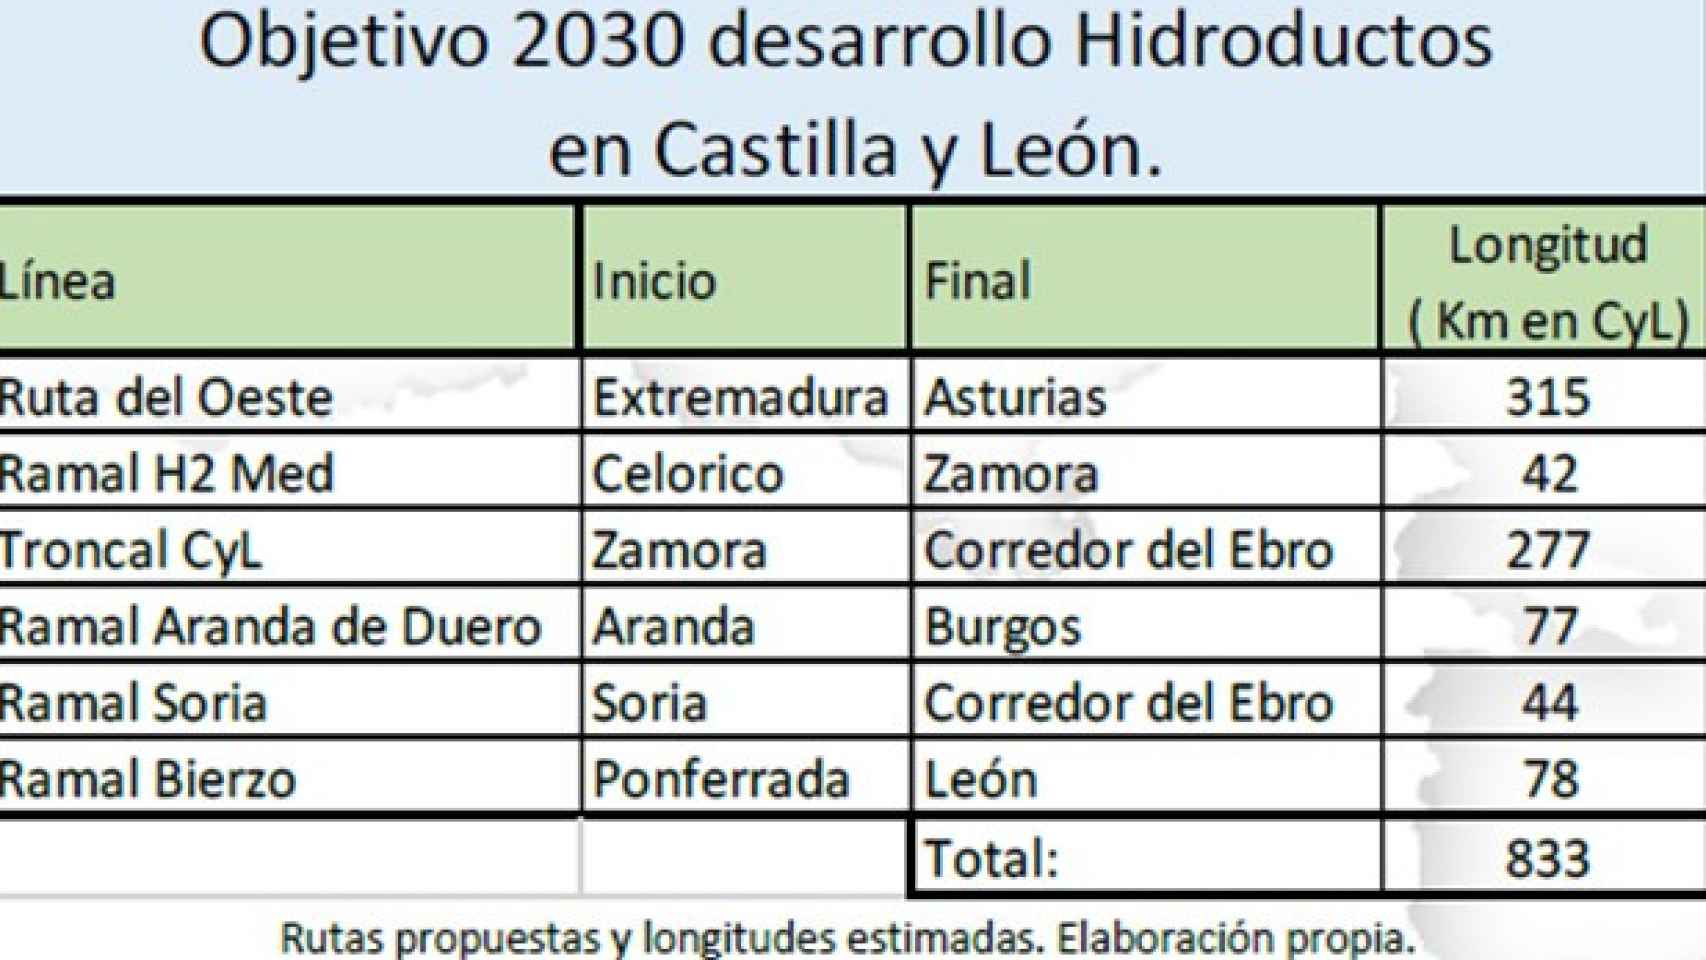 Esquema de hidroductos en Castilla y León para 2030, según H2CYL